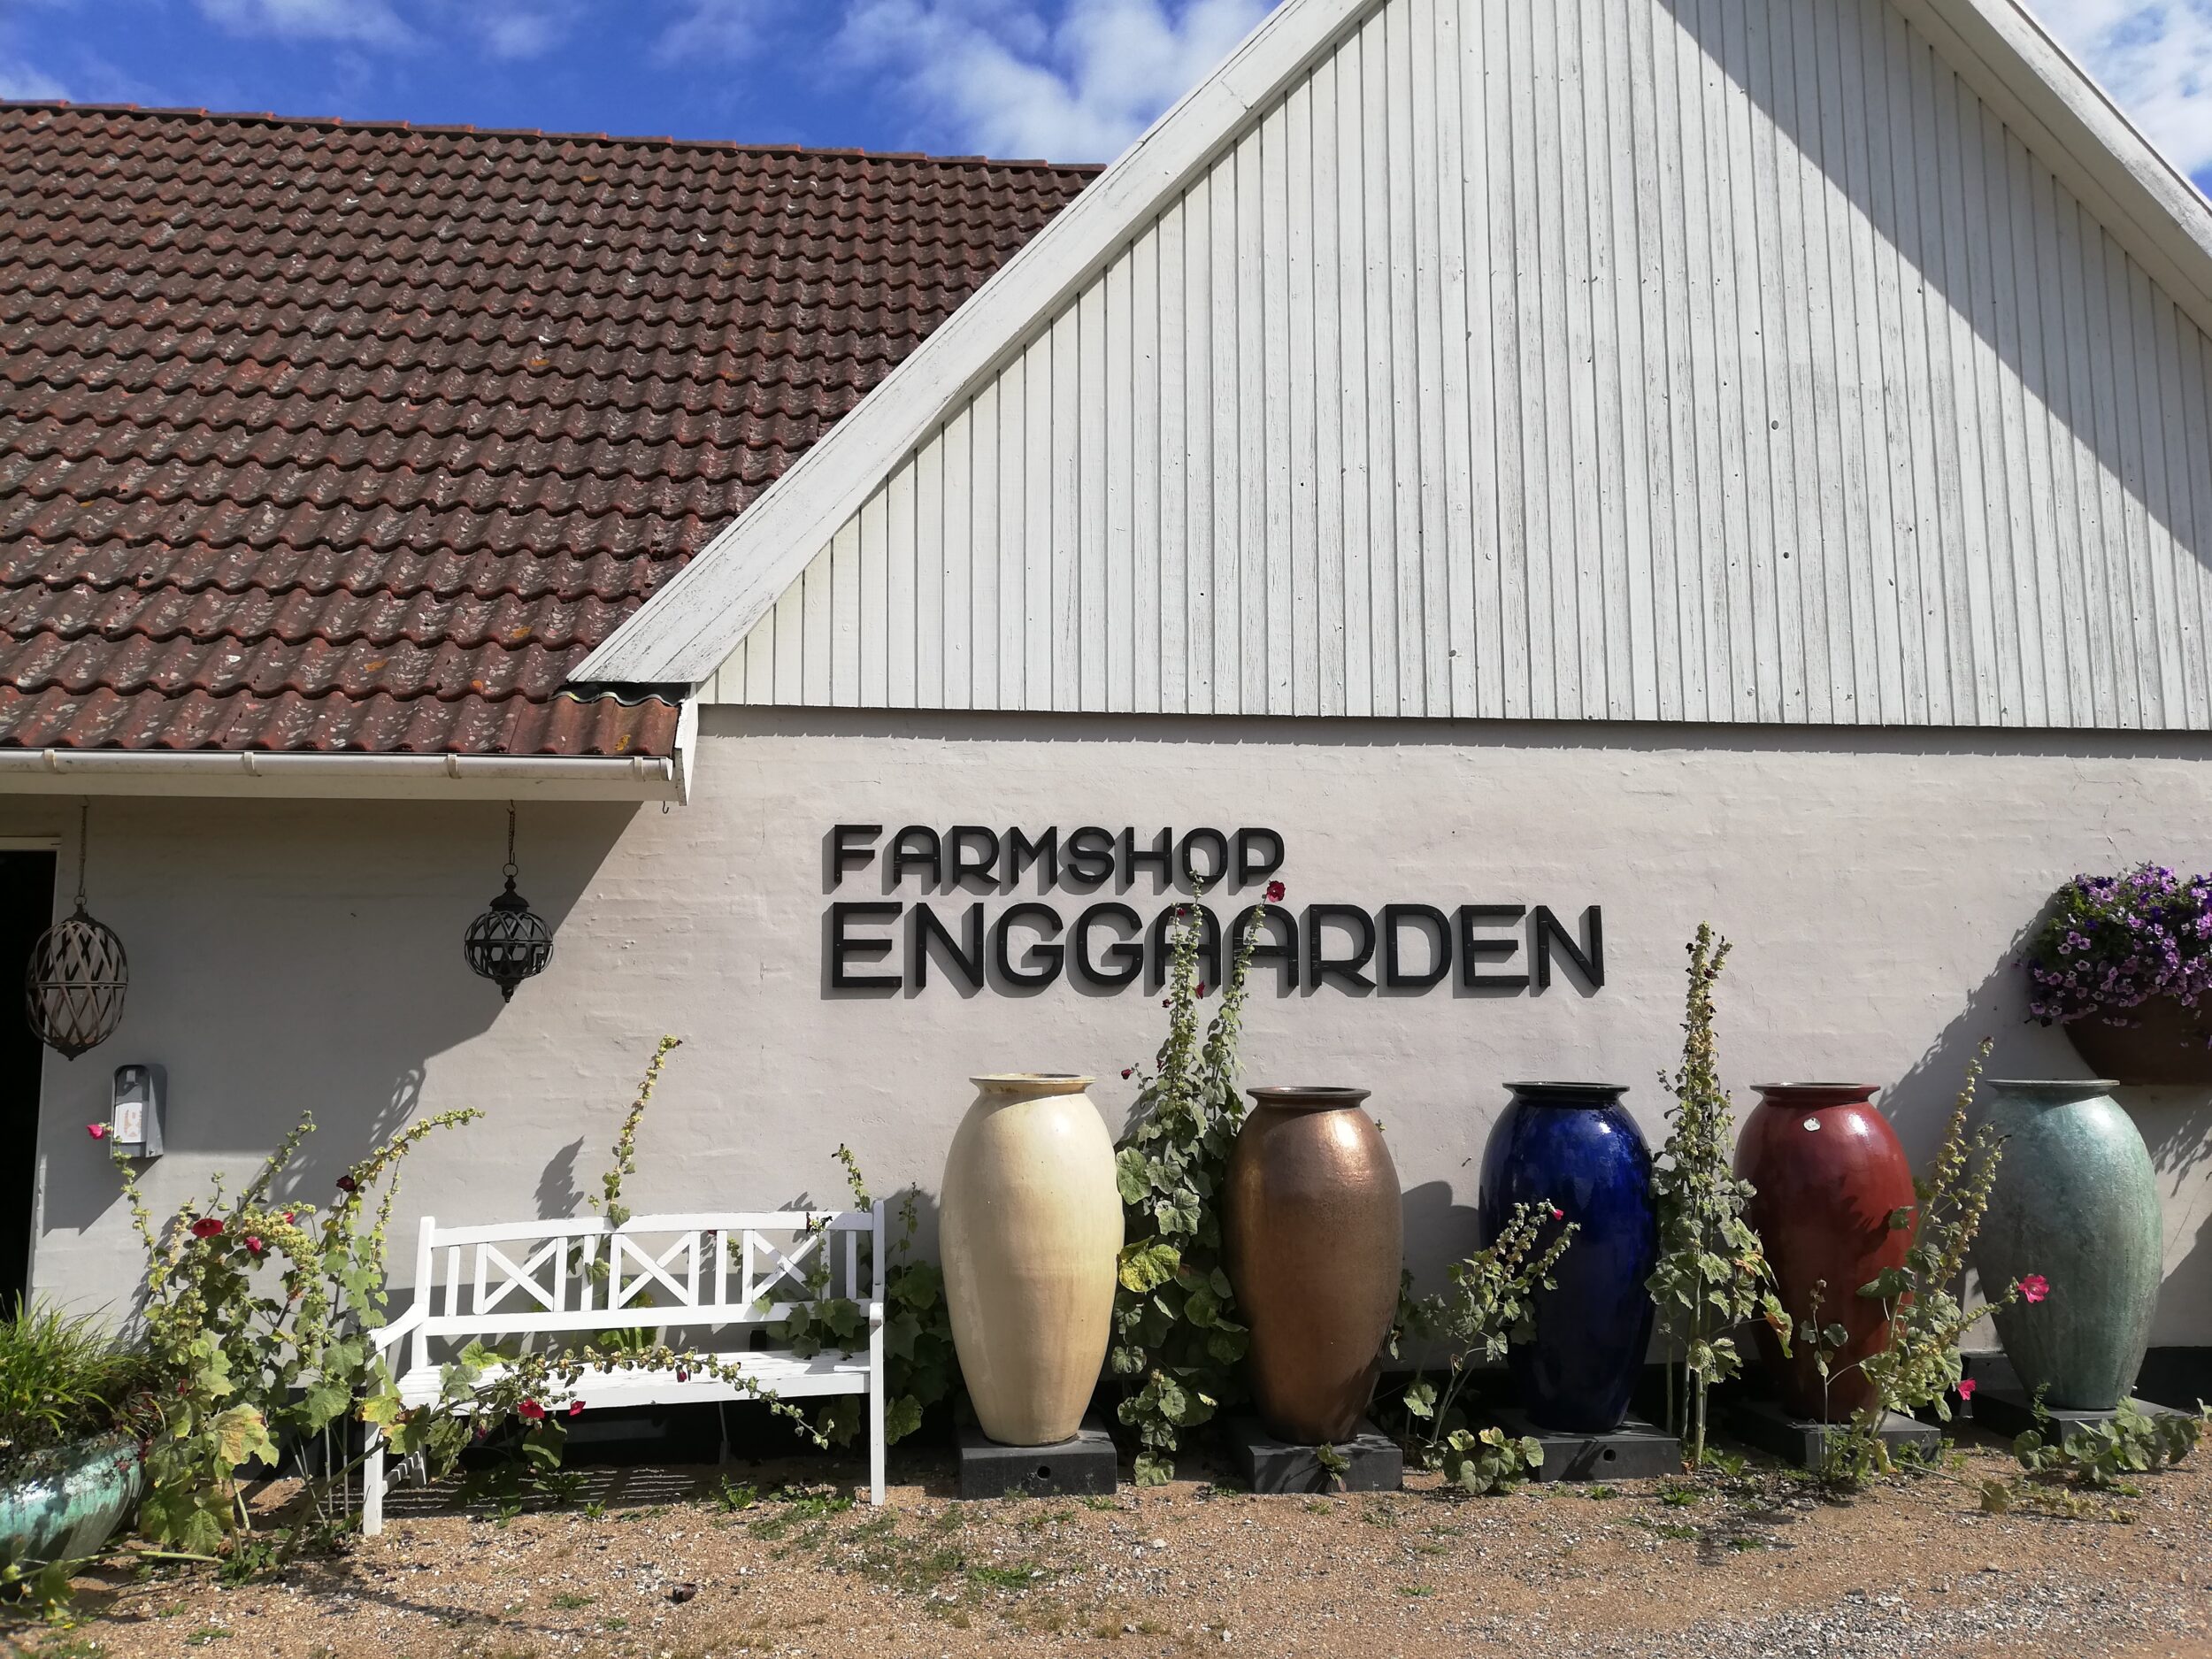 Farmshop Enggaarden | Holbæk